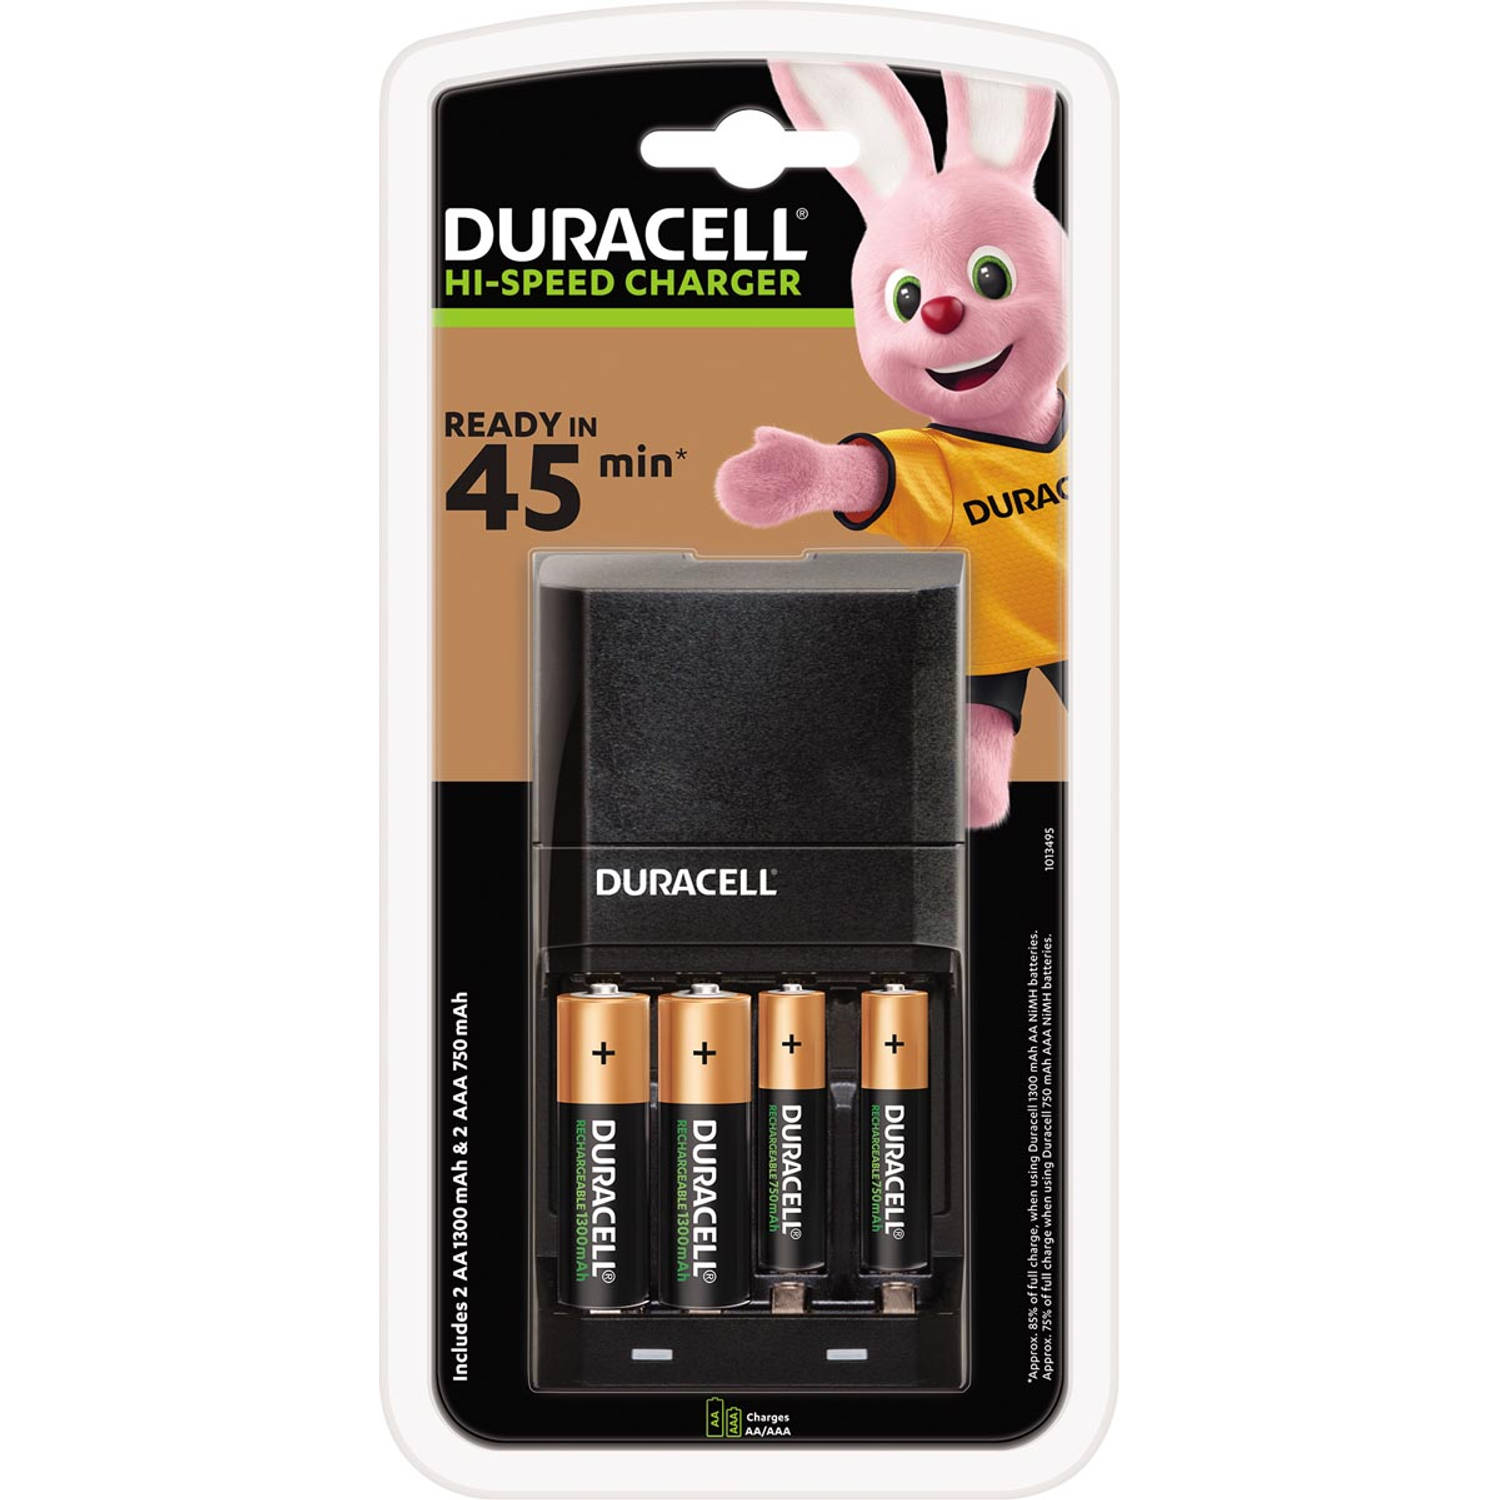 Duracell batterijlader Hi-Speed Advanced Charger, inclusief 2 AA en 2 AAA batterijen, op blister 3 stuks